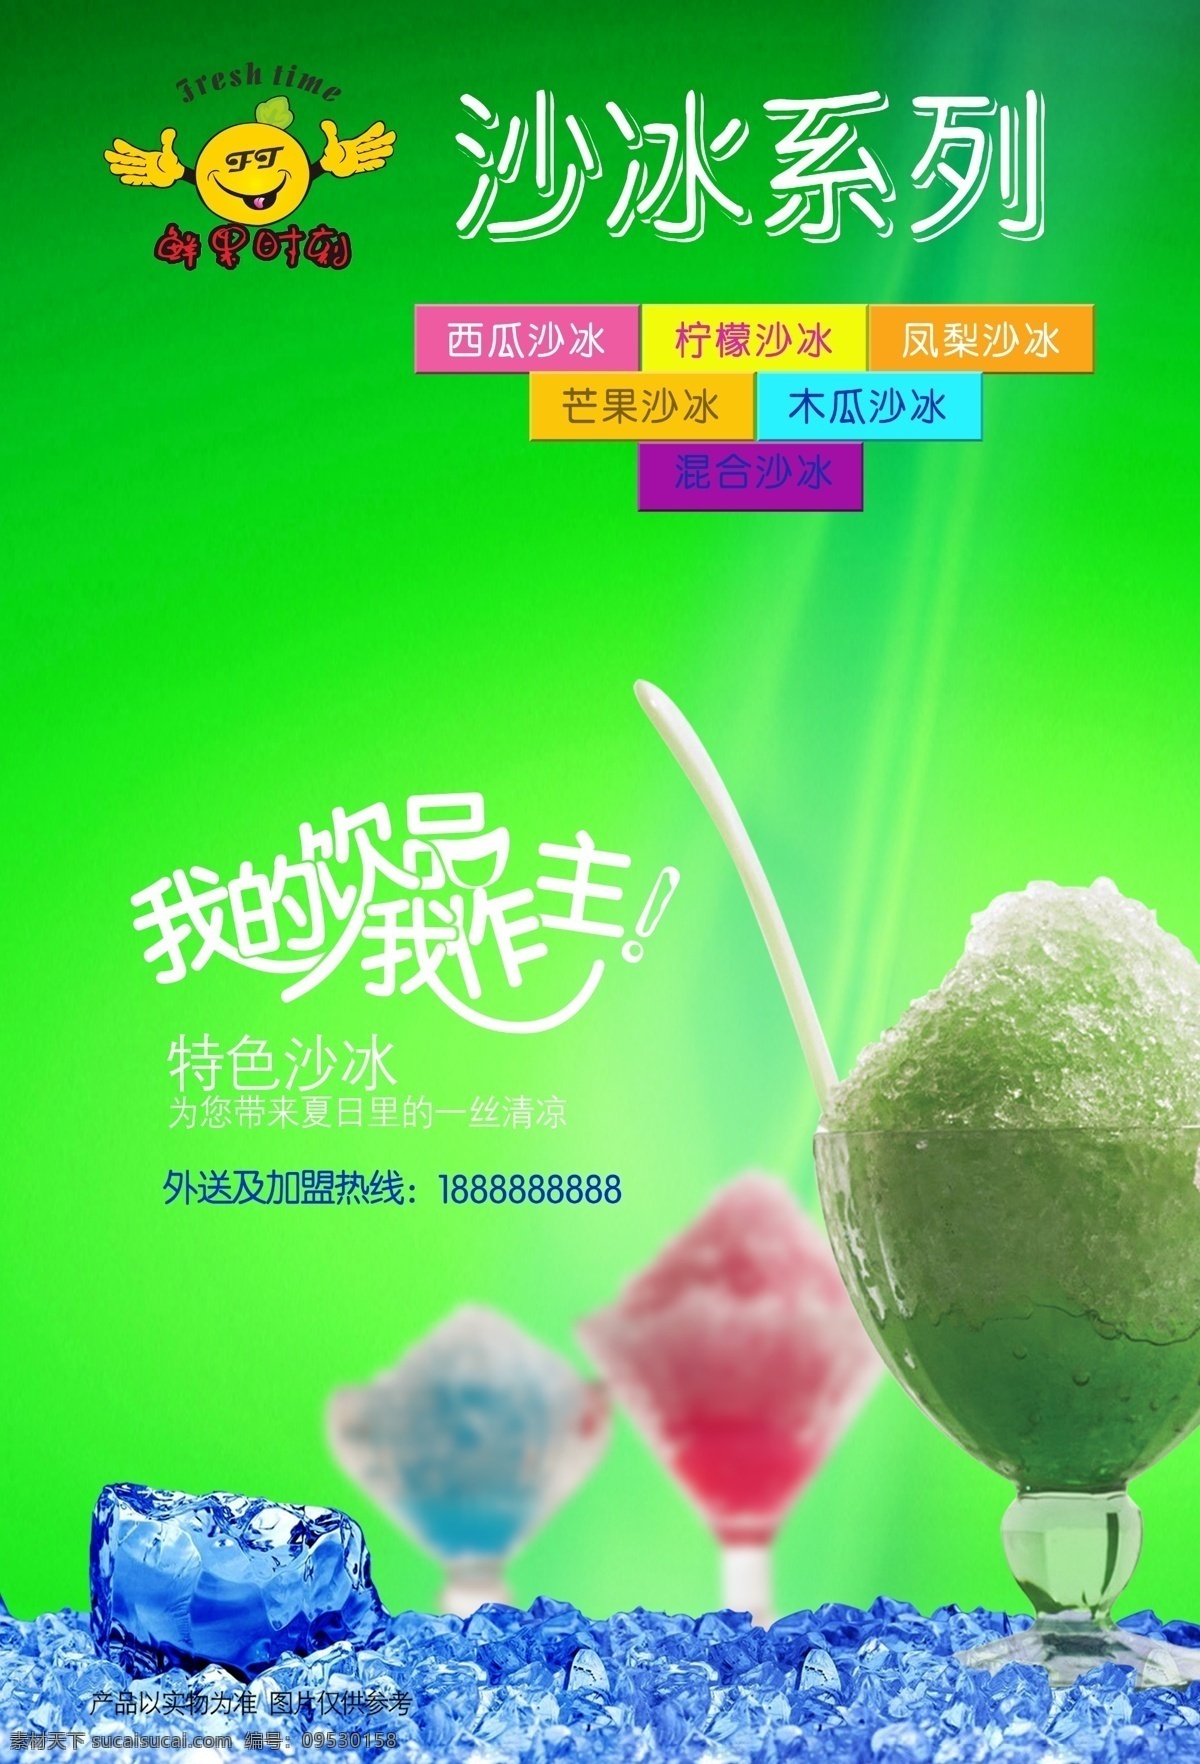 鲜果 饮品 连锁 沙 冰 系列 海报 模板 冷饮 广告 展板 沙冰 设计分层图集 绿色